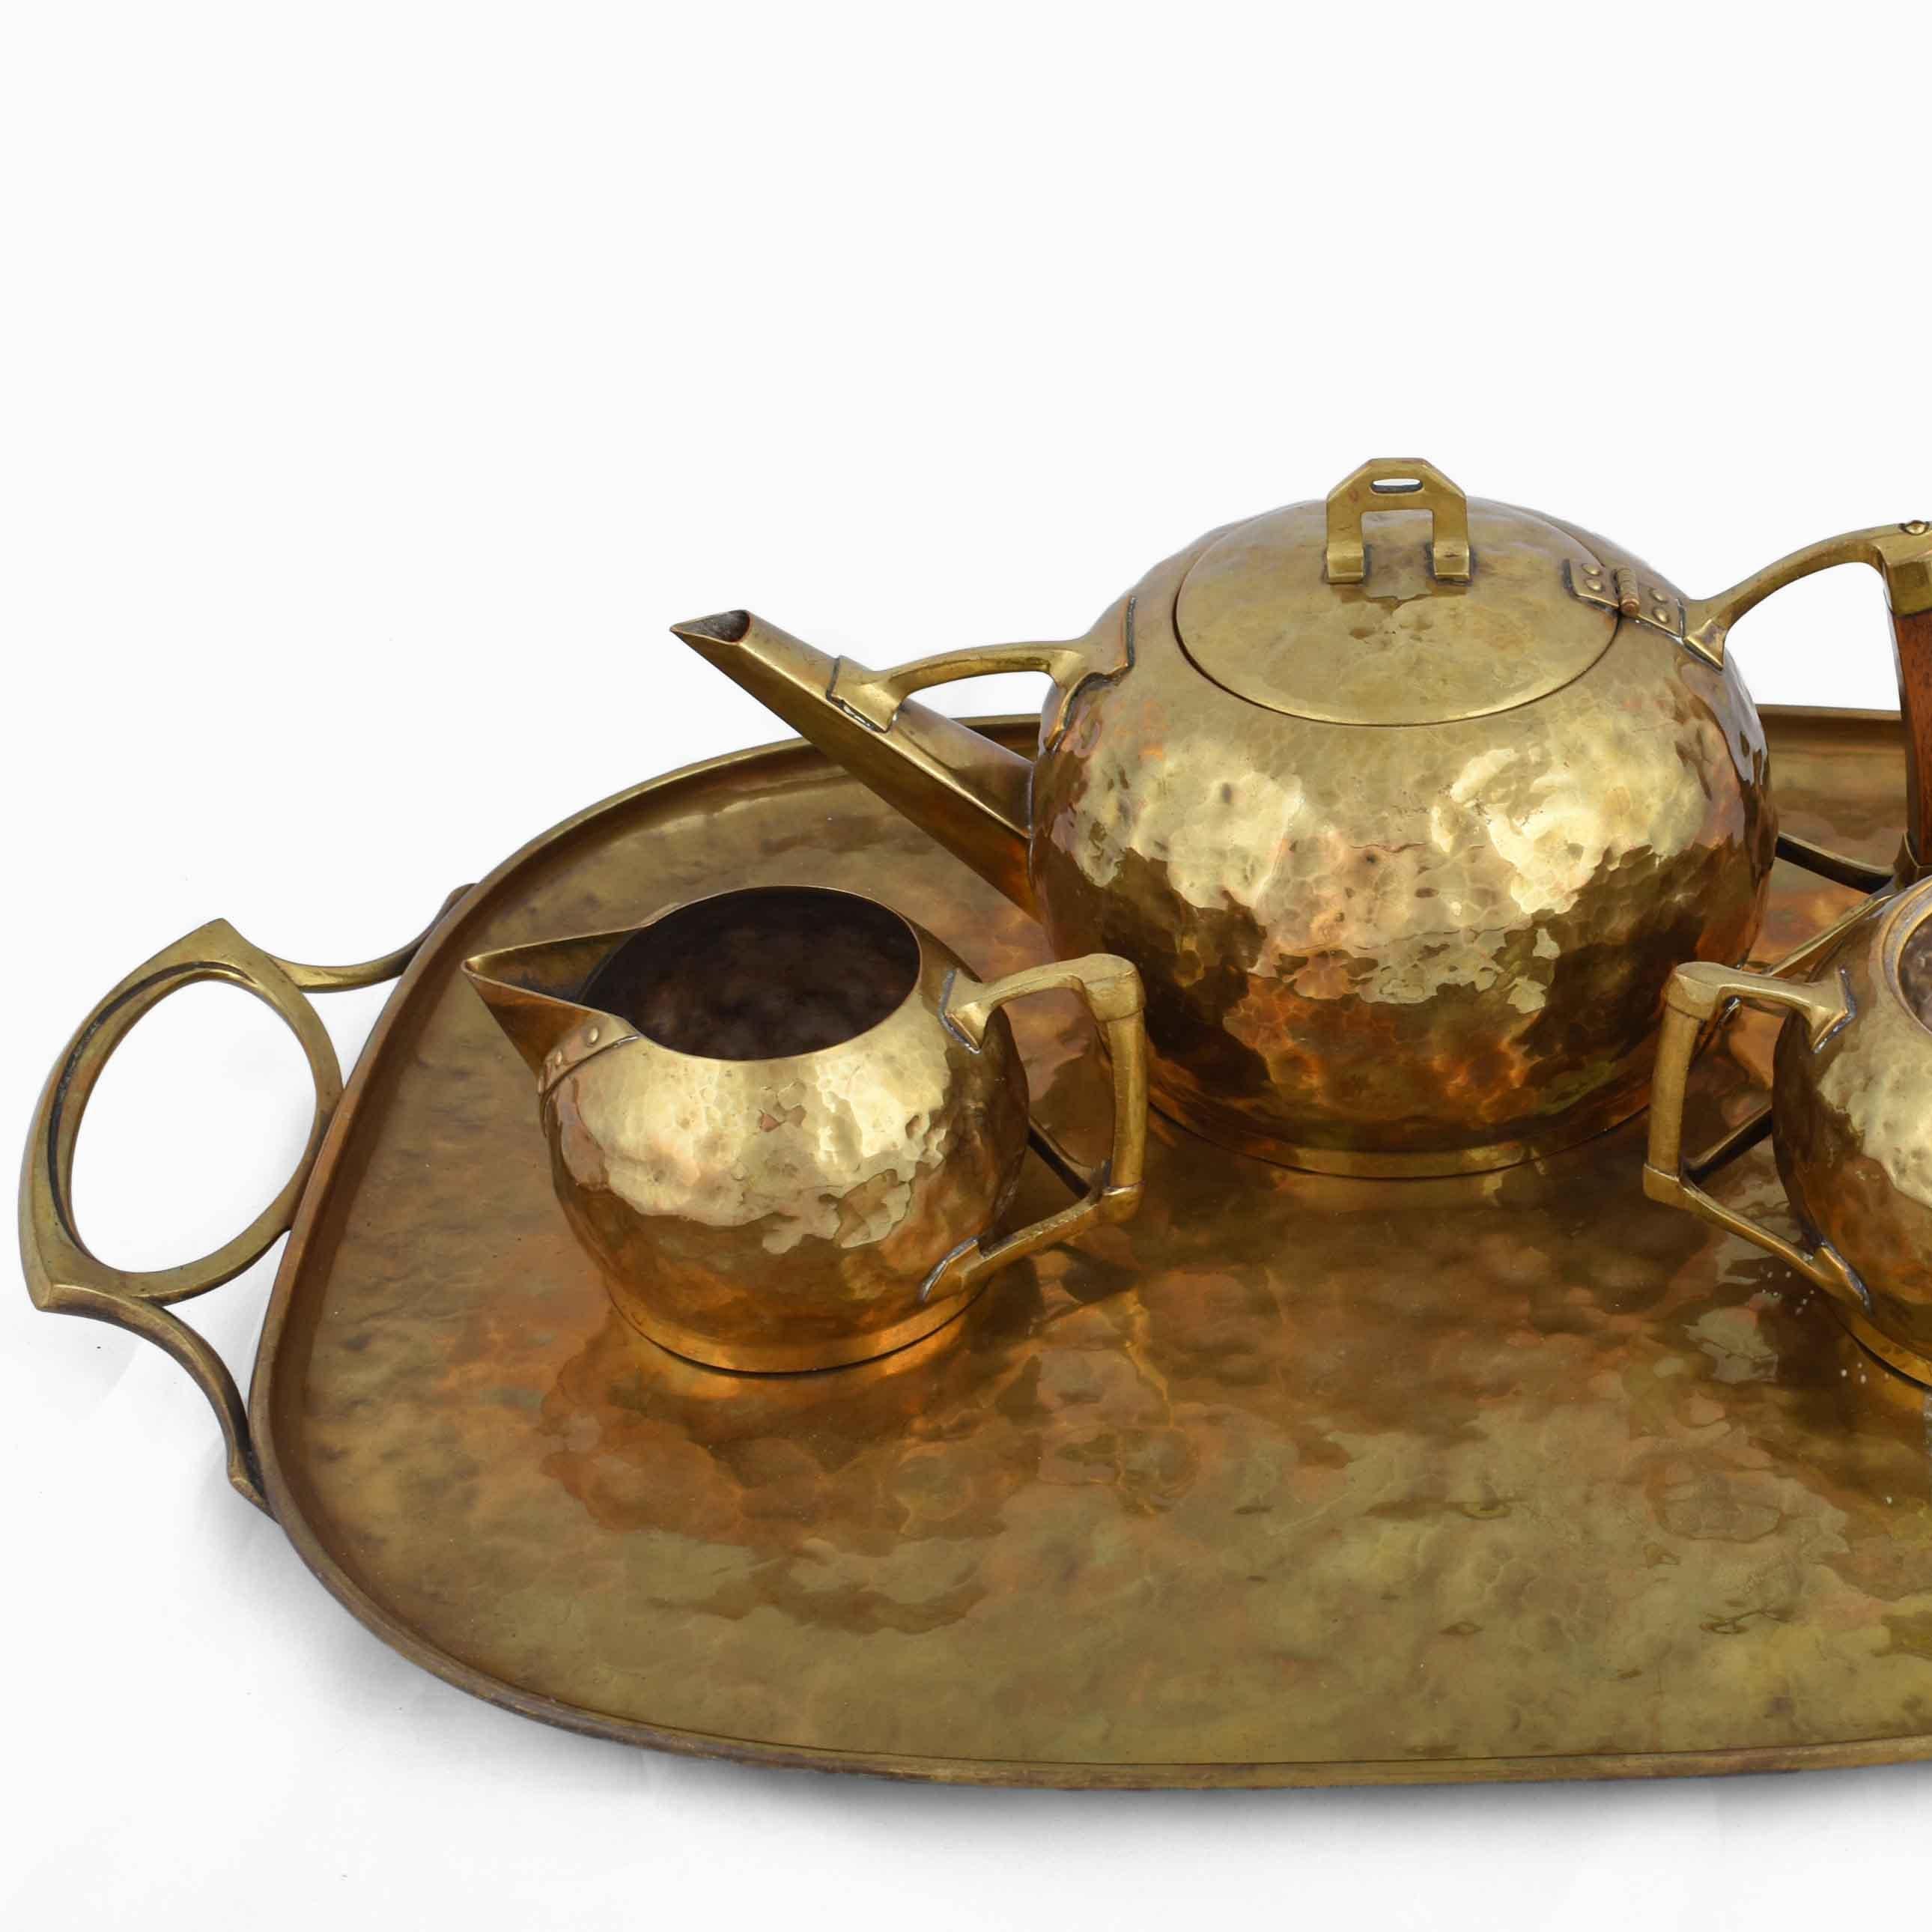 Jugendstil Jugenstil Brass Centrepiece / Teaset with Tray by Carl Deffner, Germany, 1910s For Sale